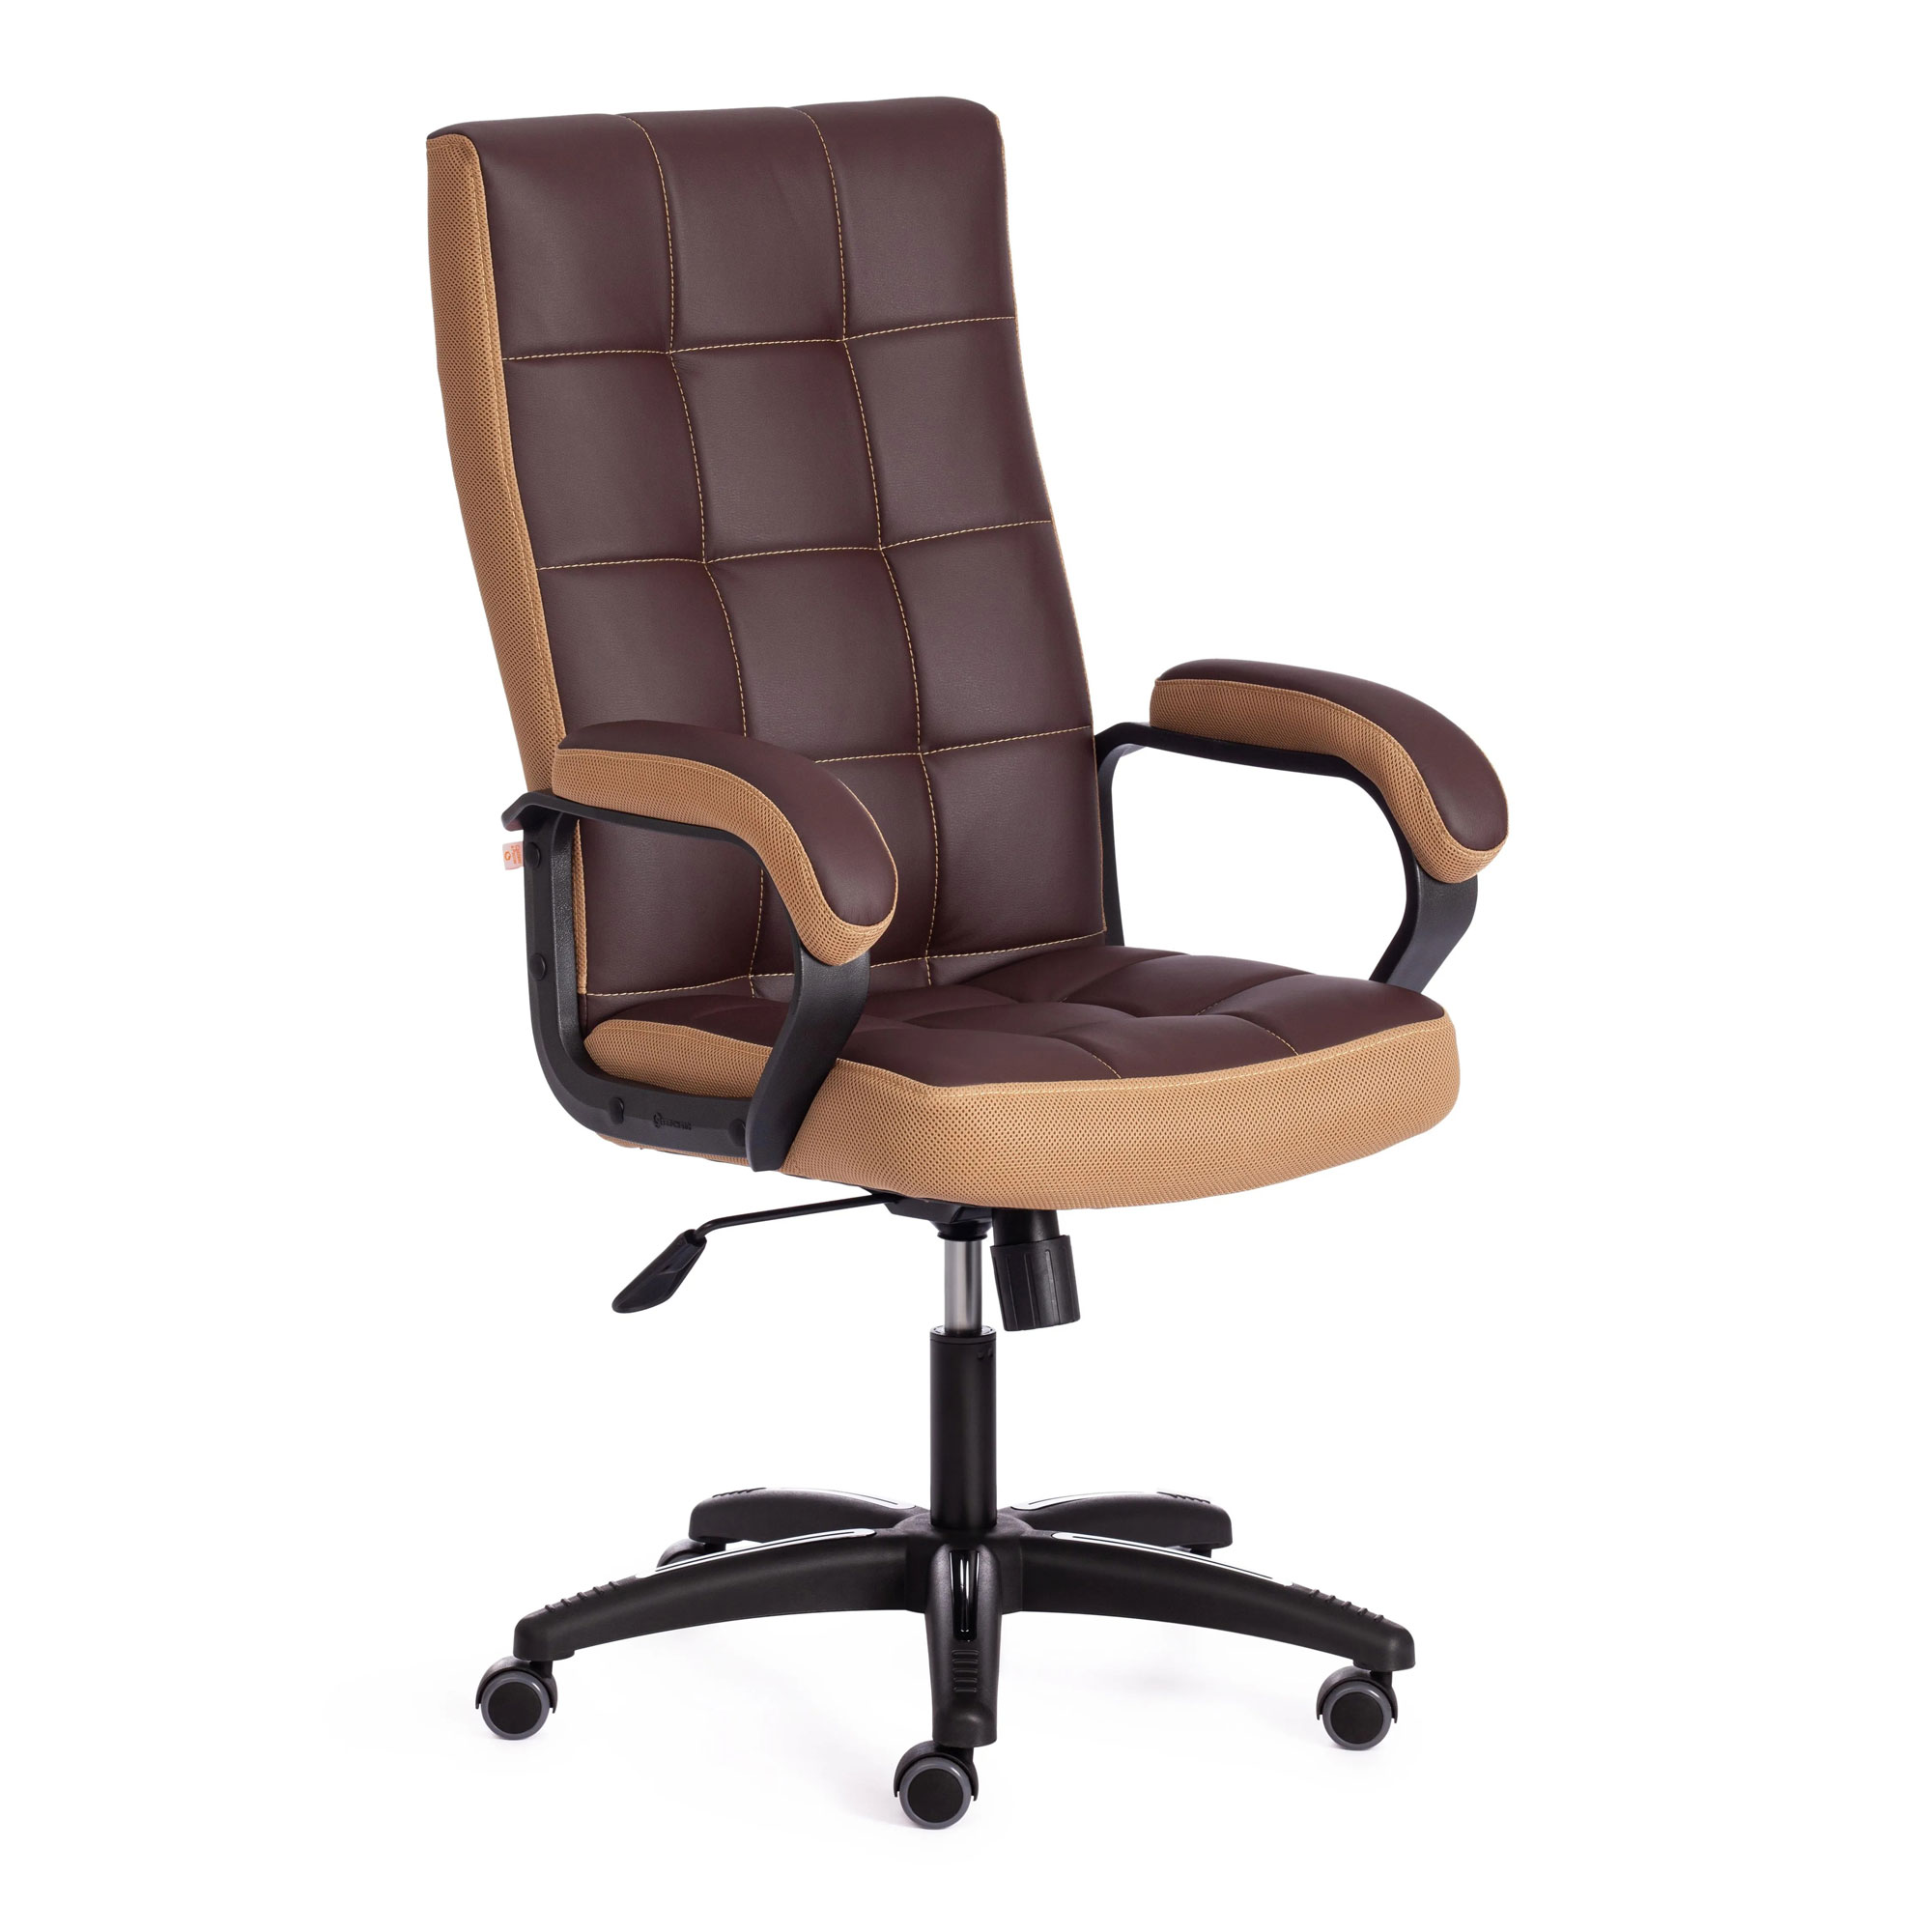 Кресло компьютерное TC искусственная кожа коричневое с бронзовым 61х47х126 см кресло компьютерное tc искусственная кожа коричневое 66х47х127 см